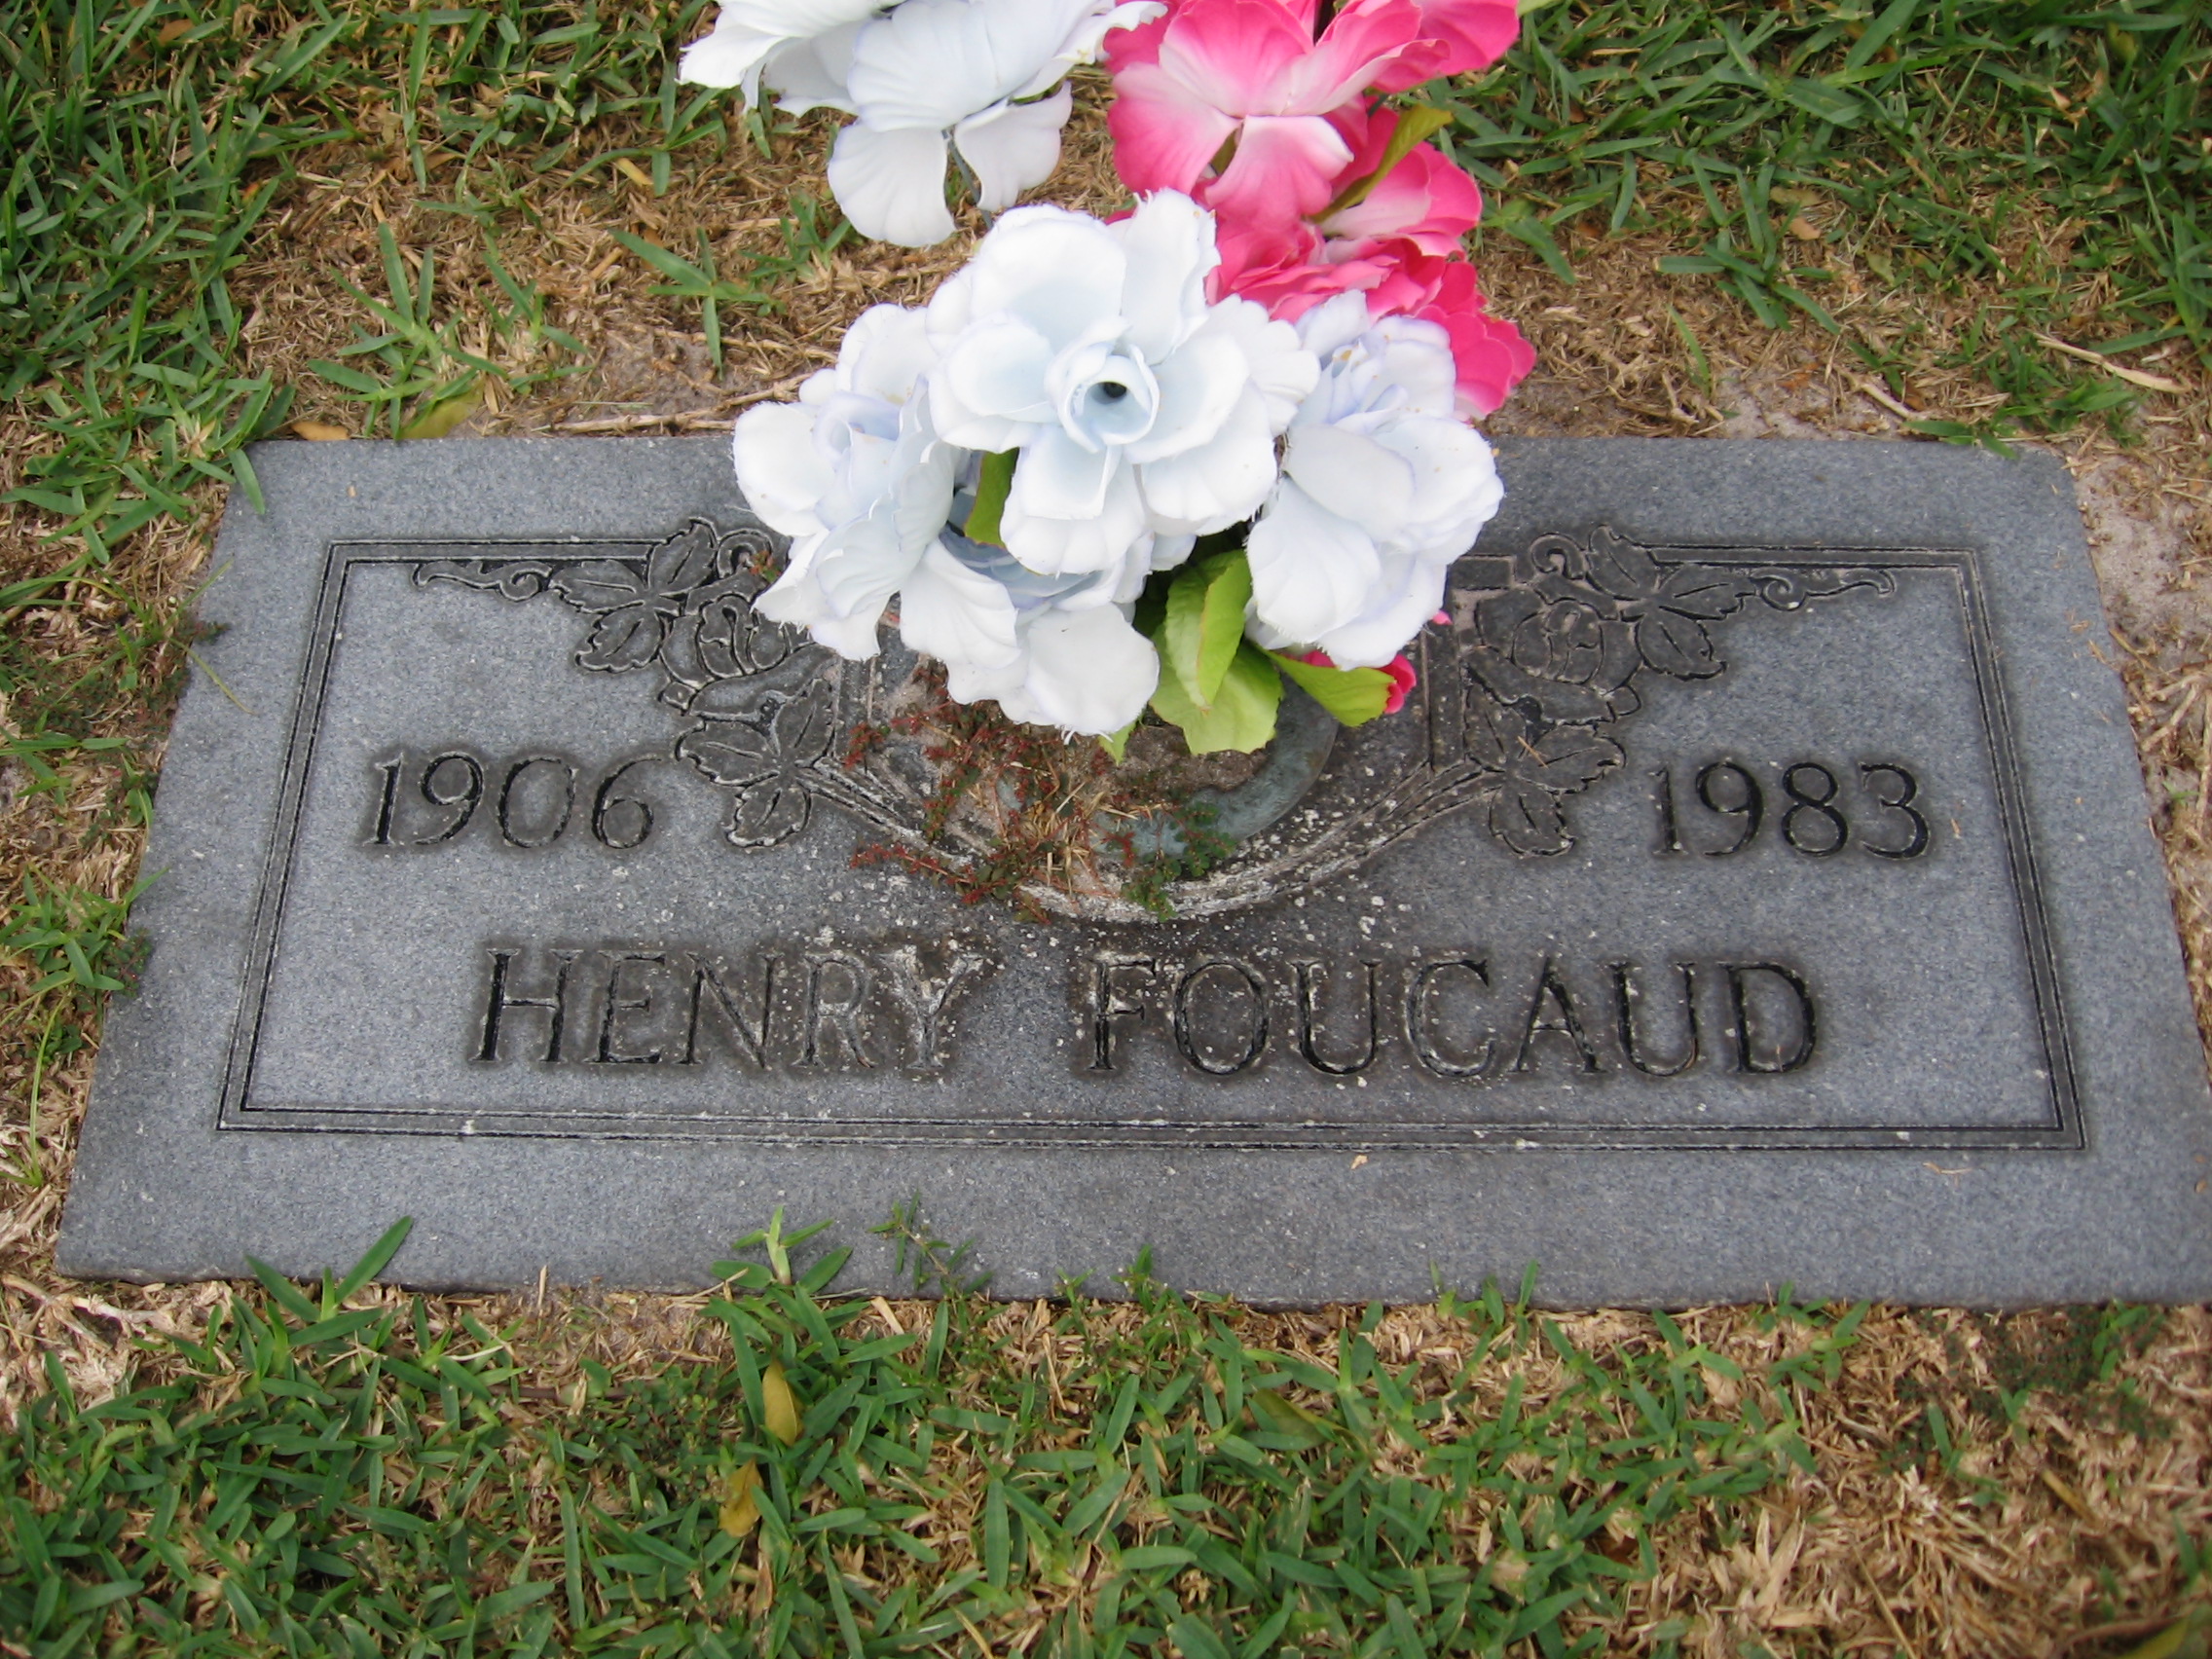 Henry Foucaud